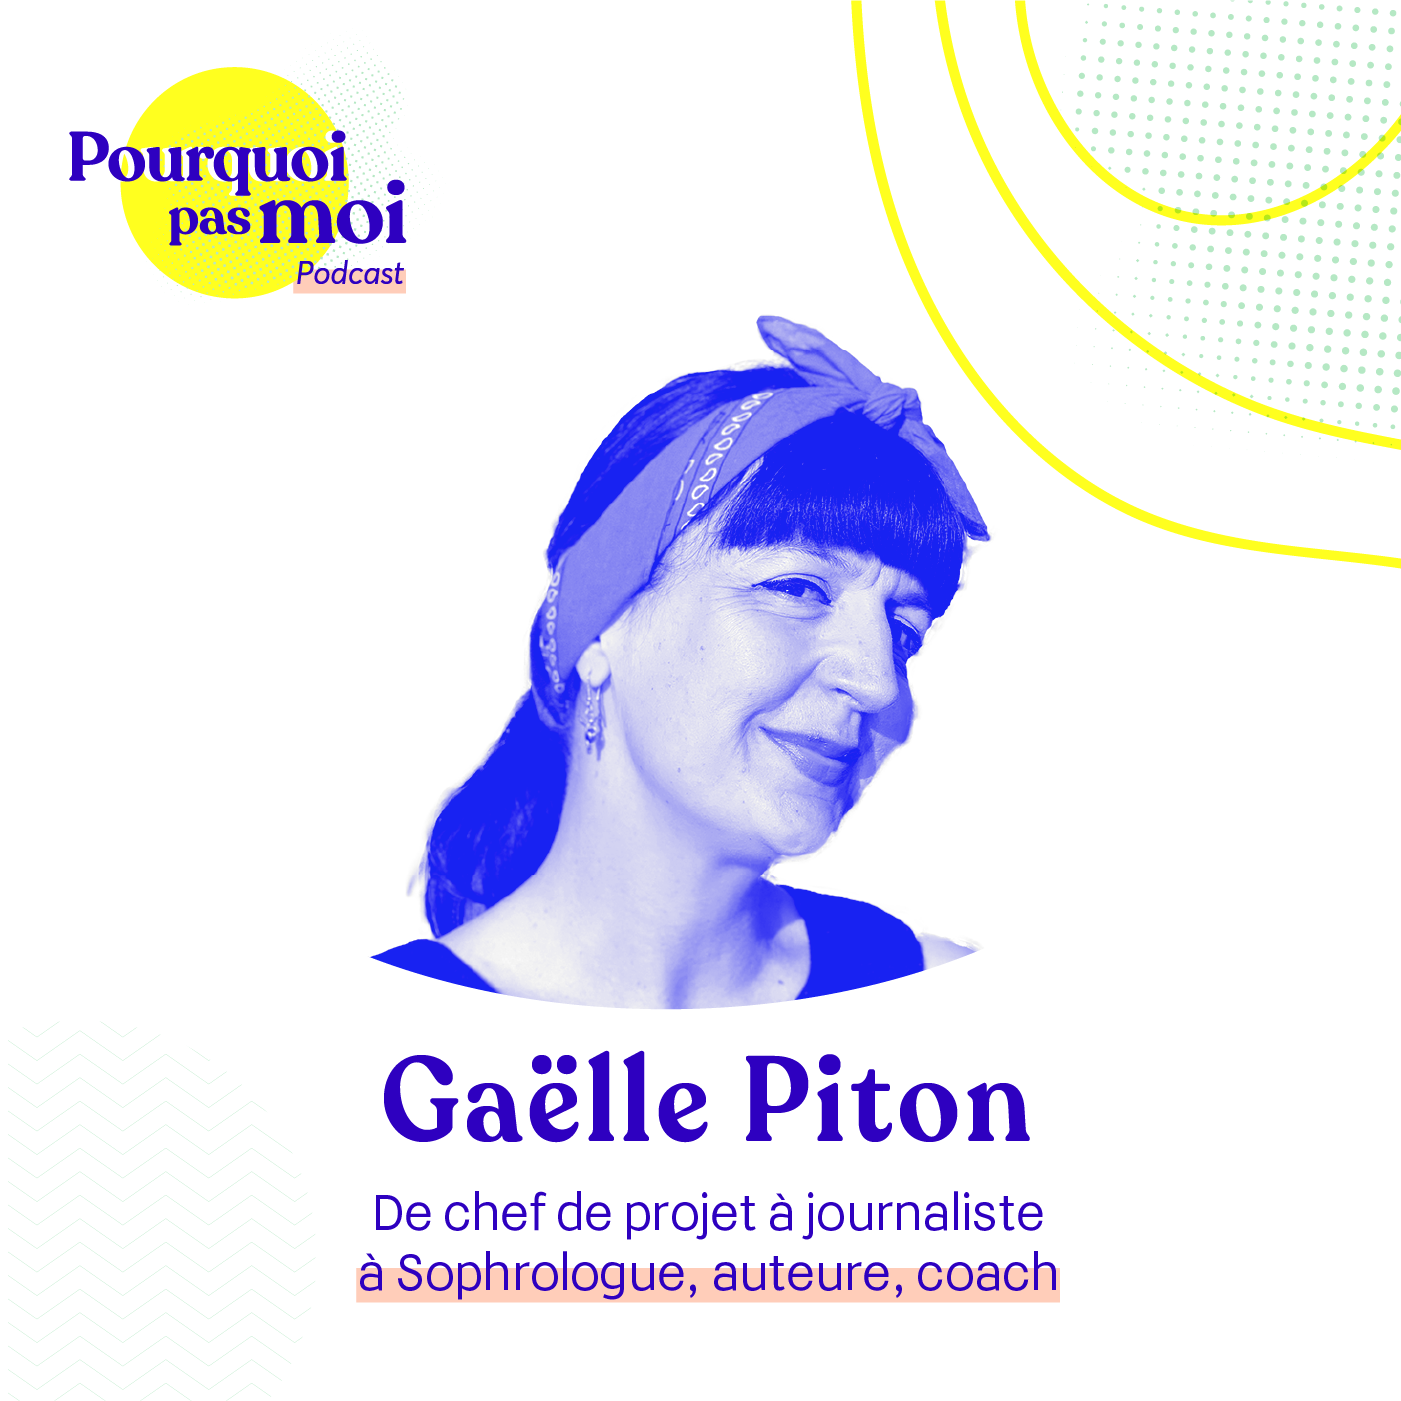 Gaëlle Piton est reçue dans le podcast "Pourquoi pas moi" par Charlotte Desrosiers